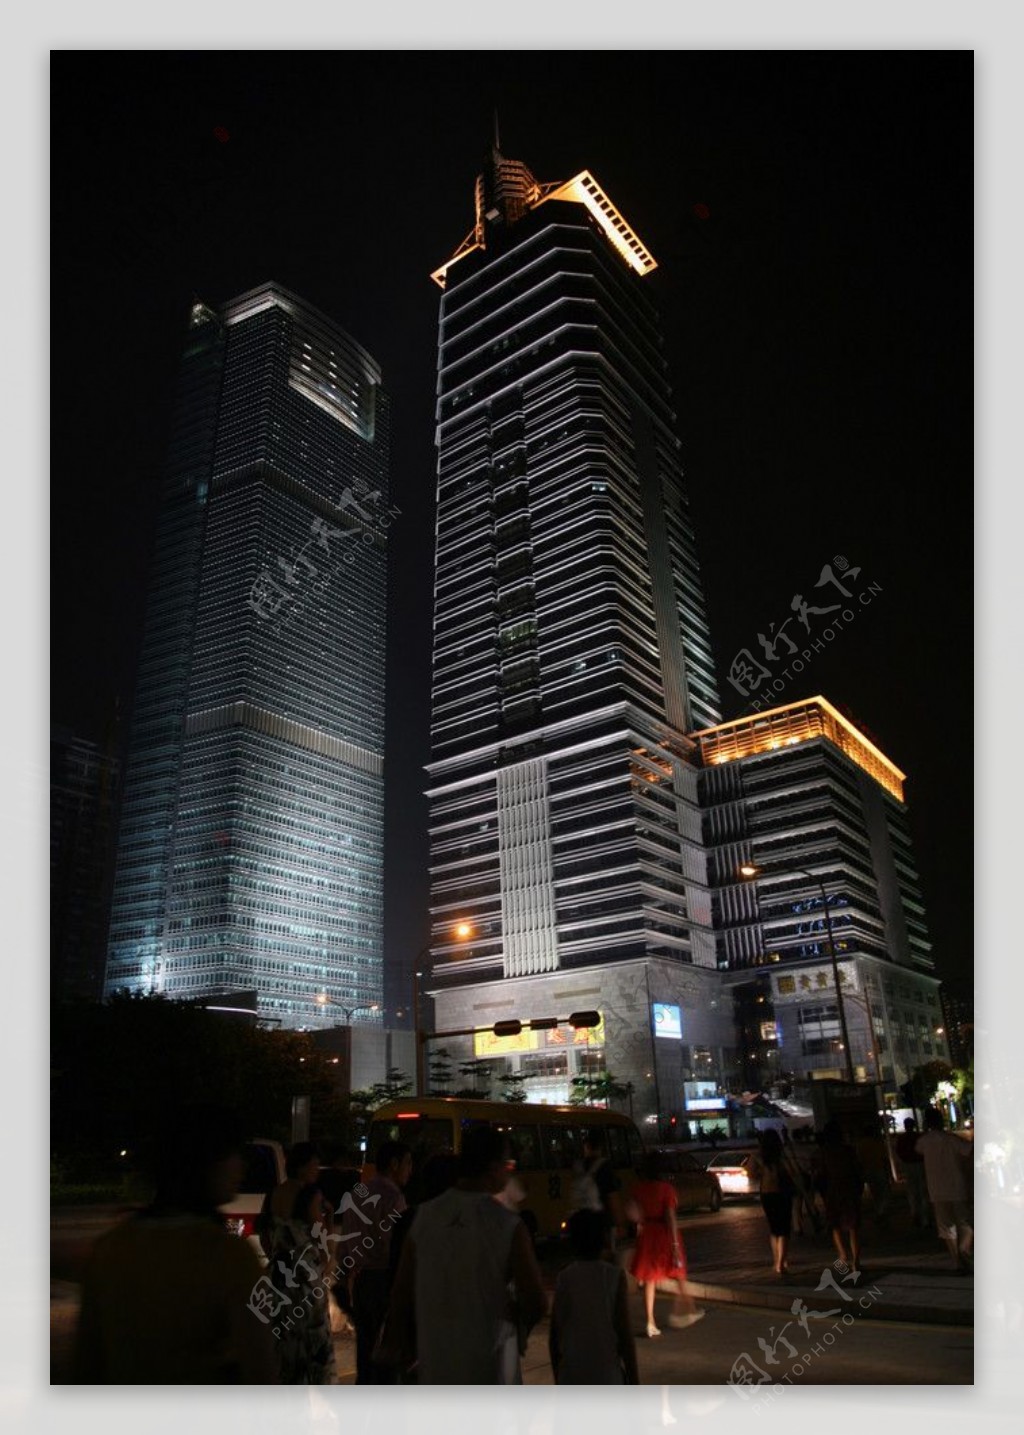 深圳安联大厦夜景图片